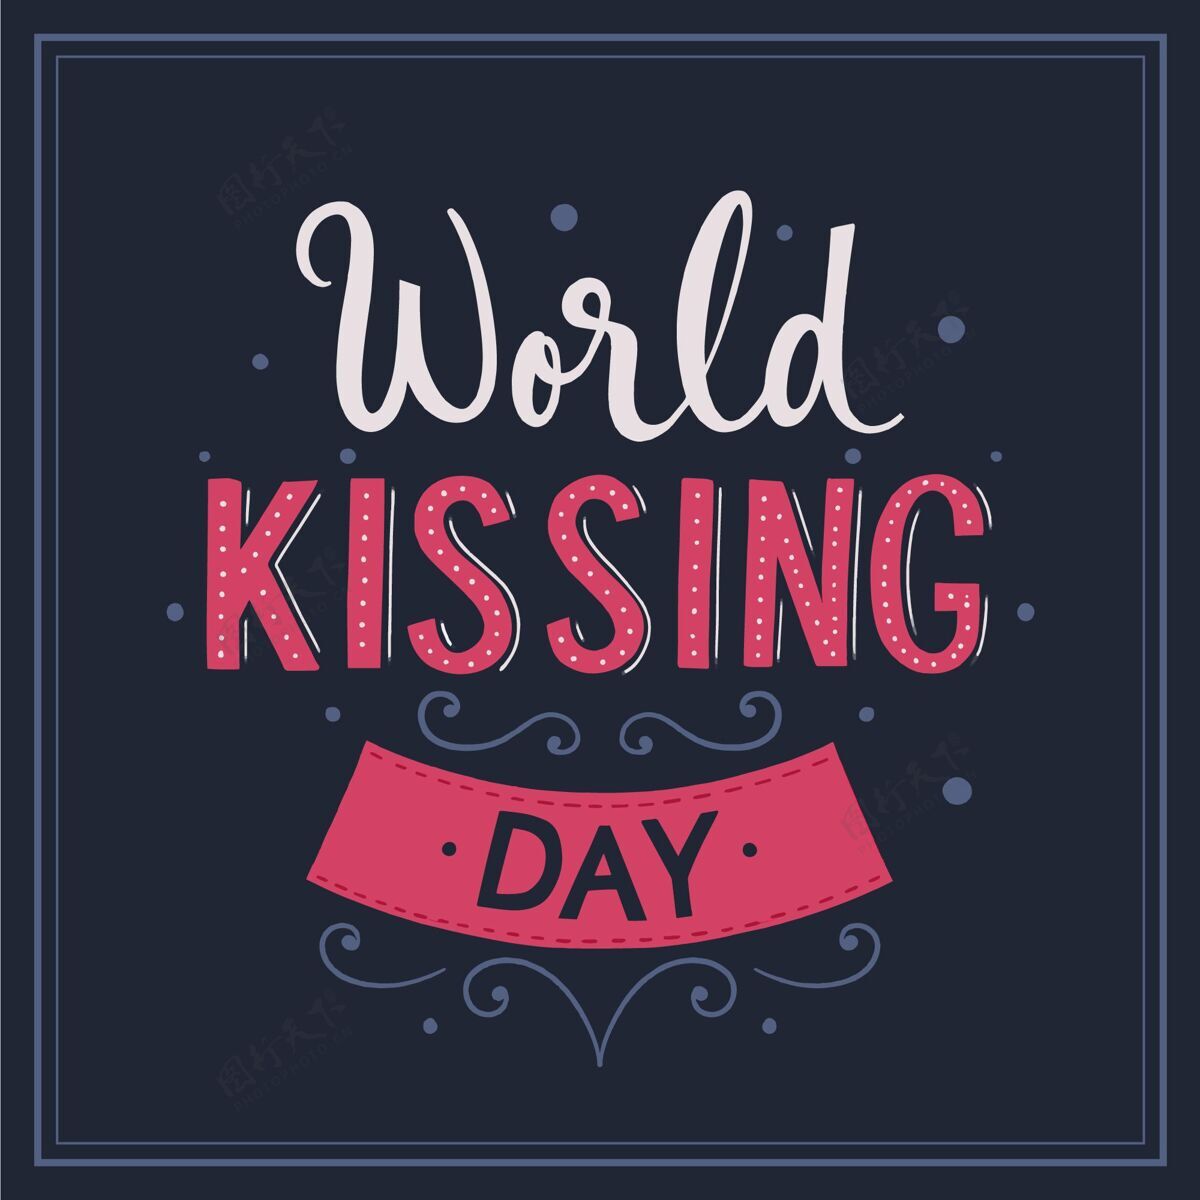 亲吻日国际接吻日刻字全球字母情感